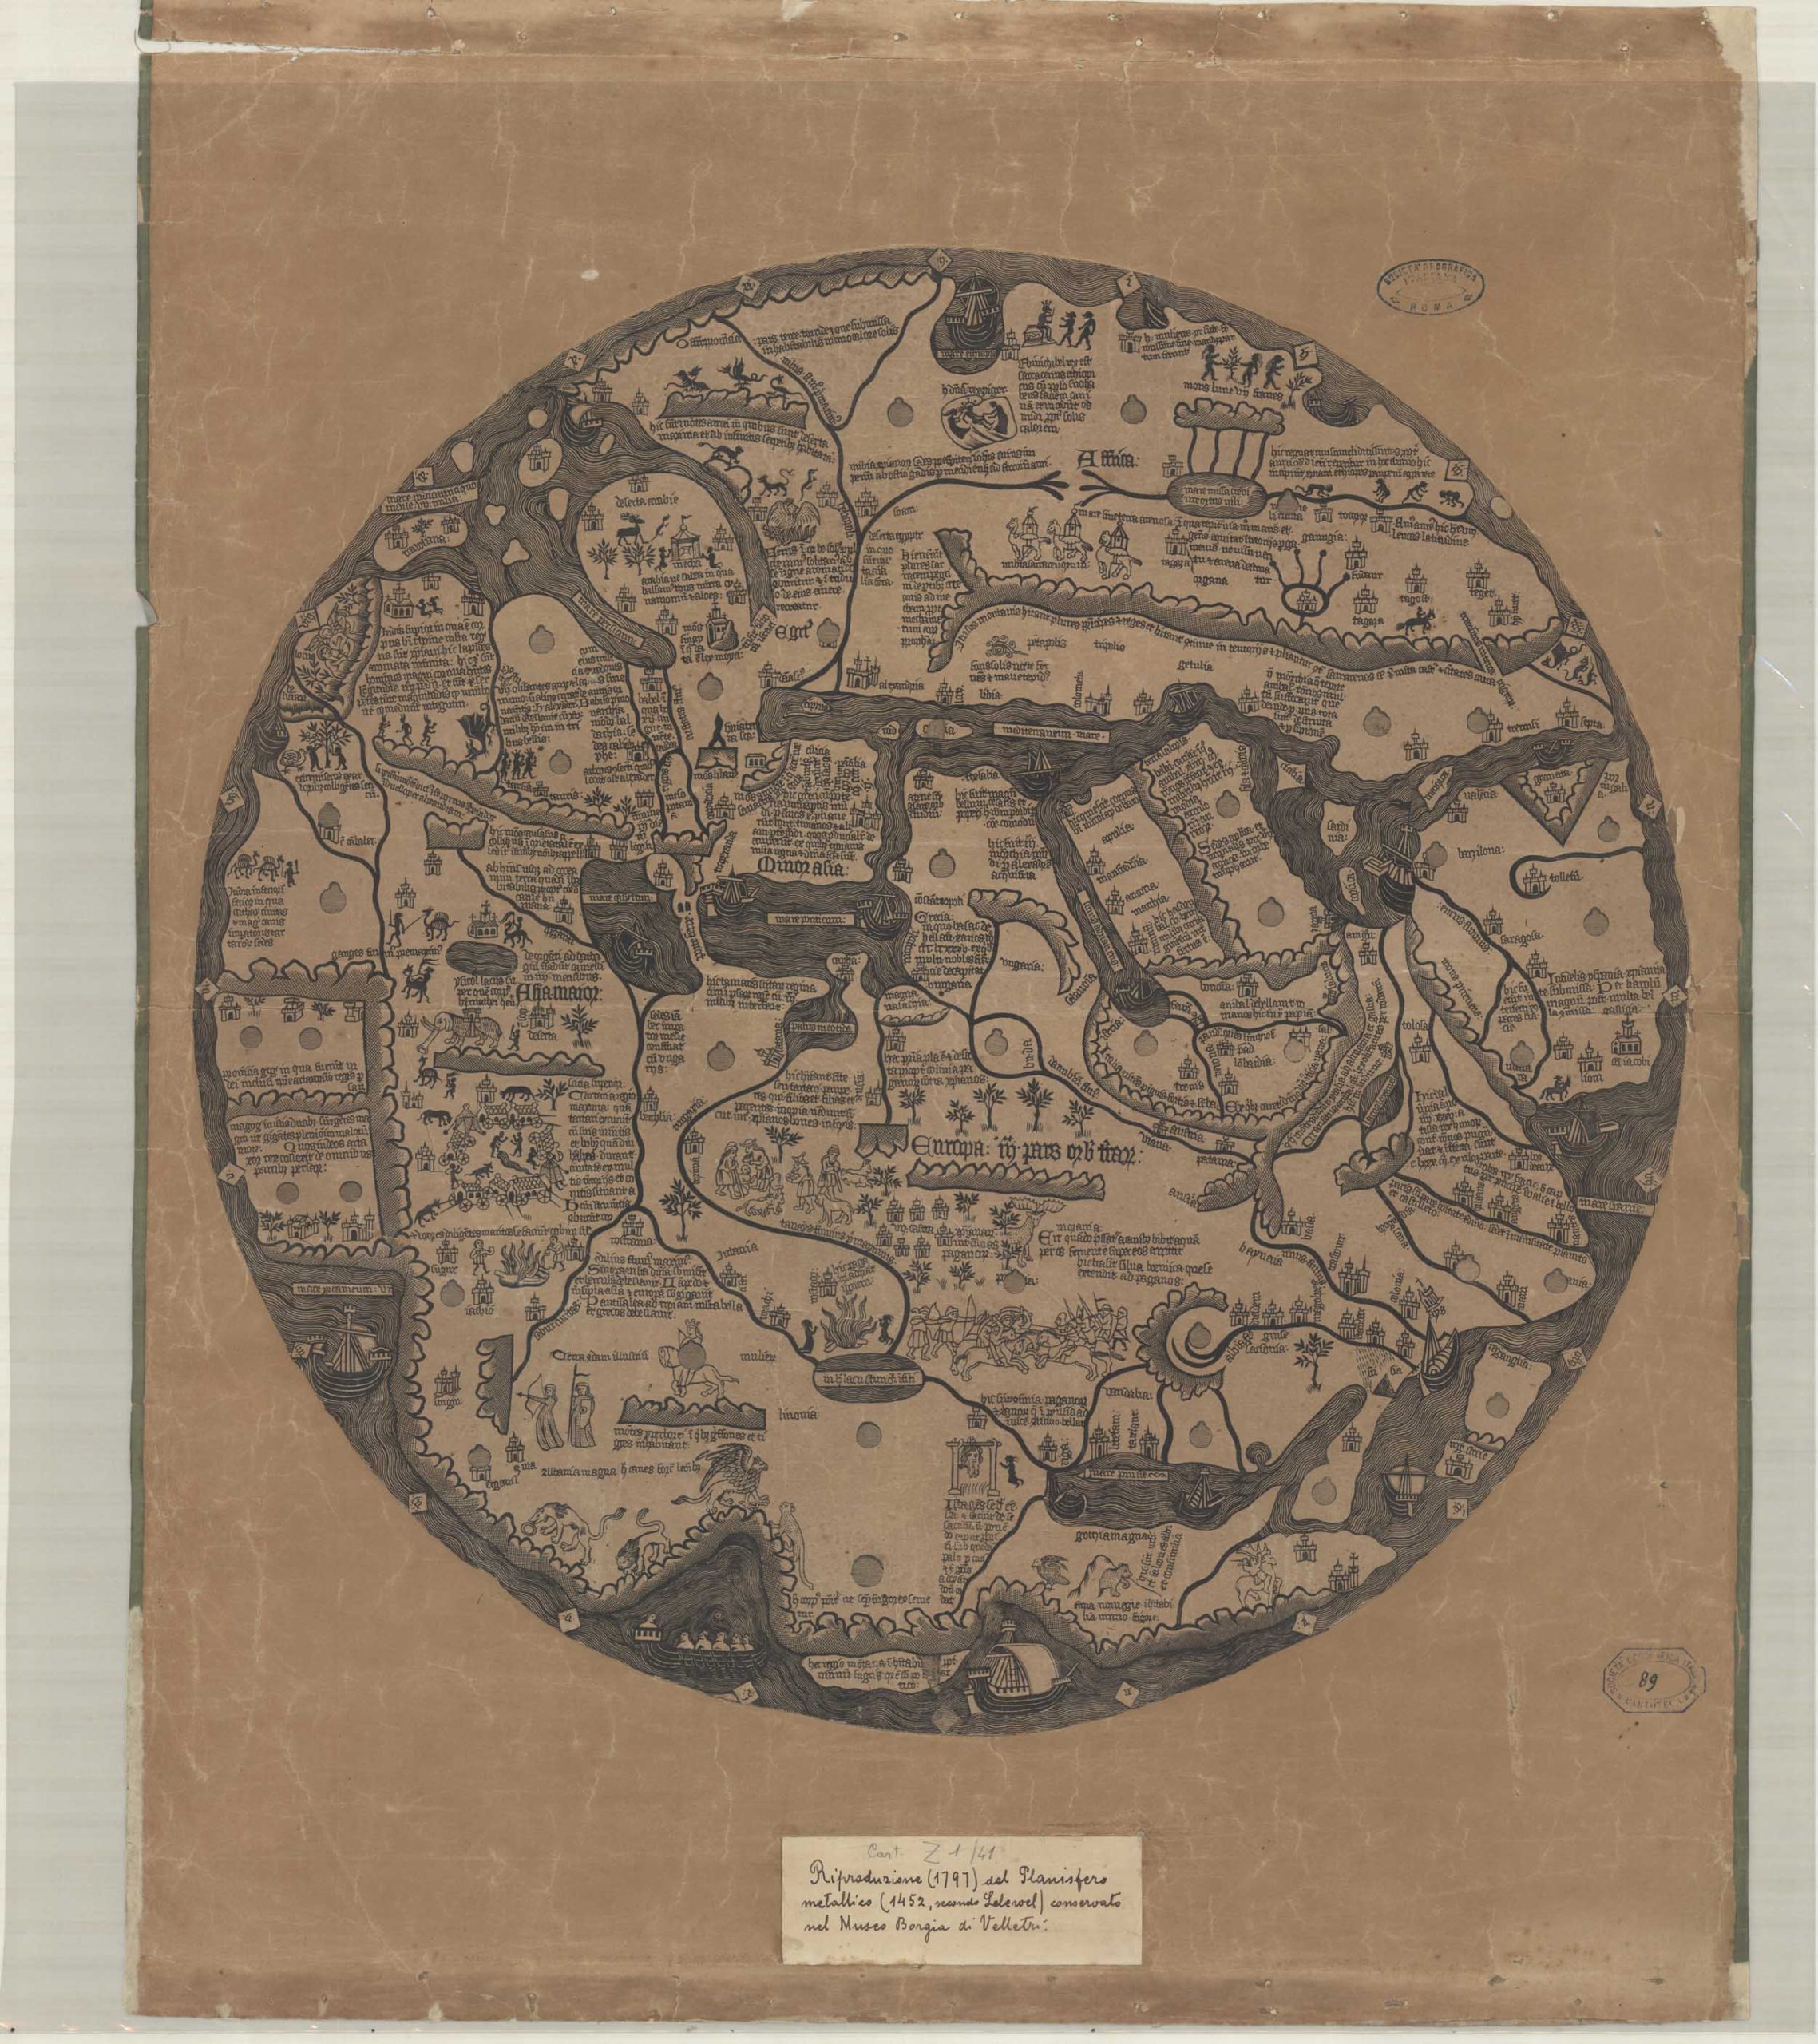 Riproduzione (1797) del Planisfero metallico conservato nel museo Borgia di Velletri